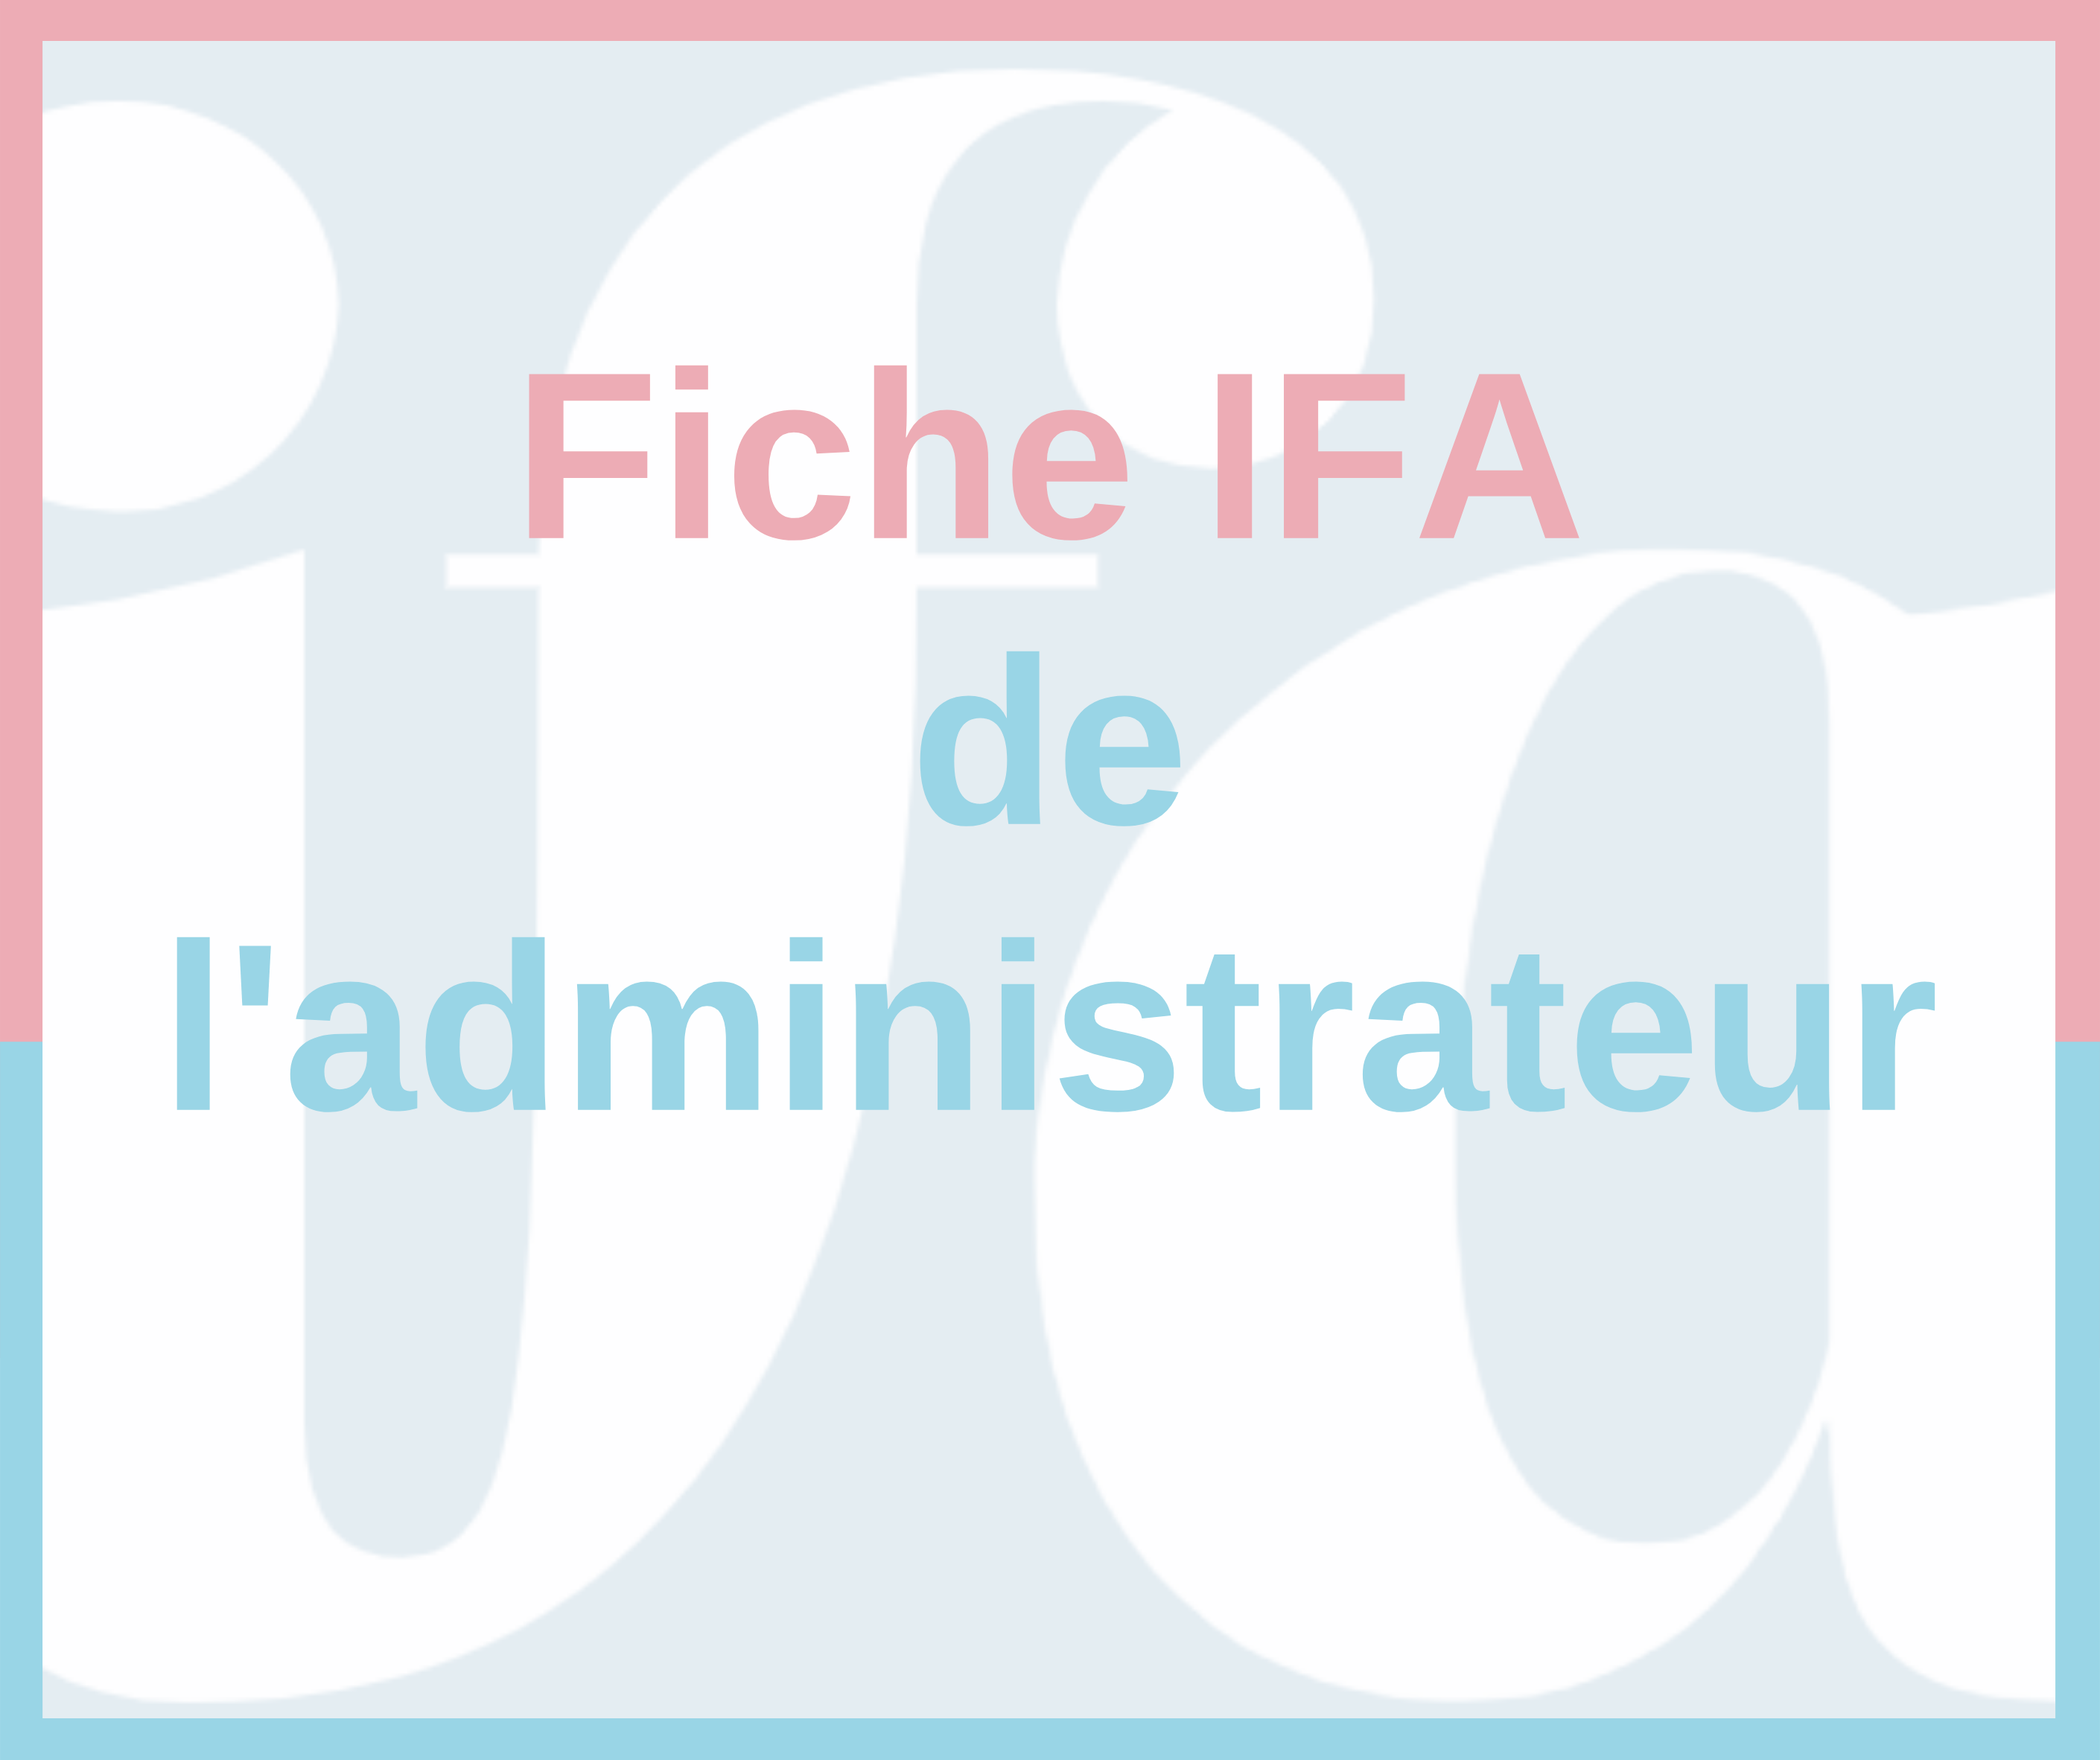 Fiche IFA de l'administrateur - Synthèse du rapport  HCGE 2020